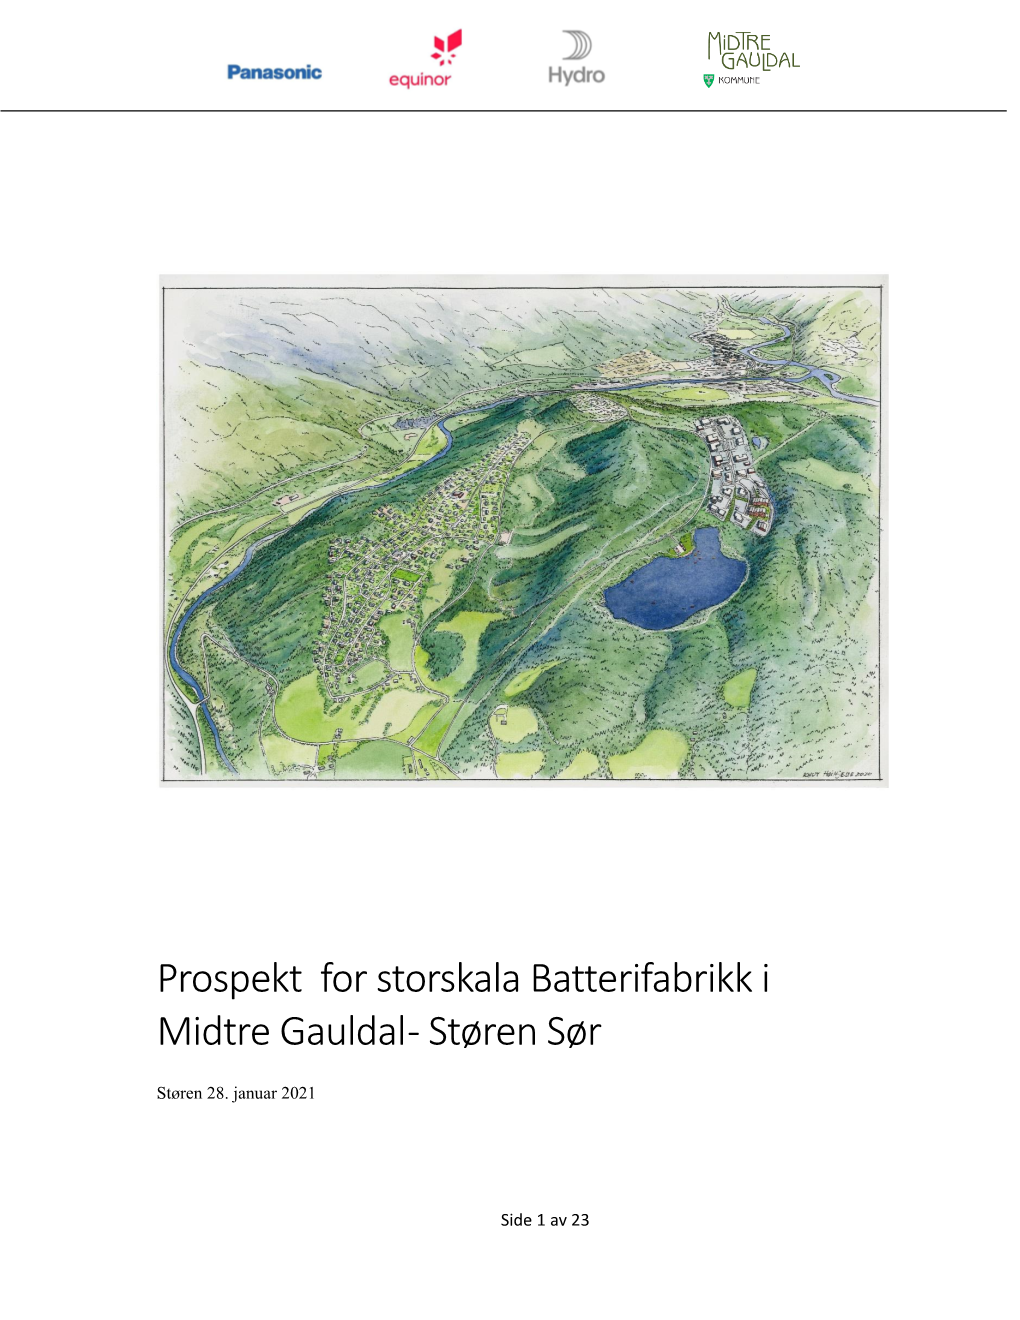 Prospekt for Storskala Batterifabrikk I Midtre Gauldal - Støren Sør